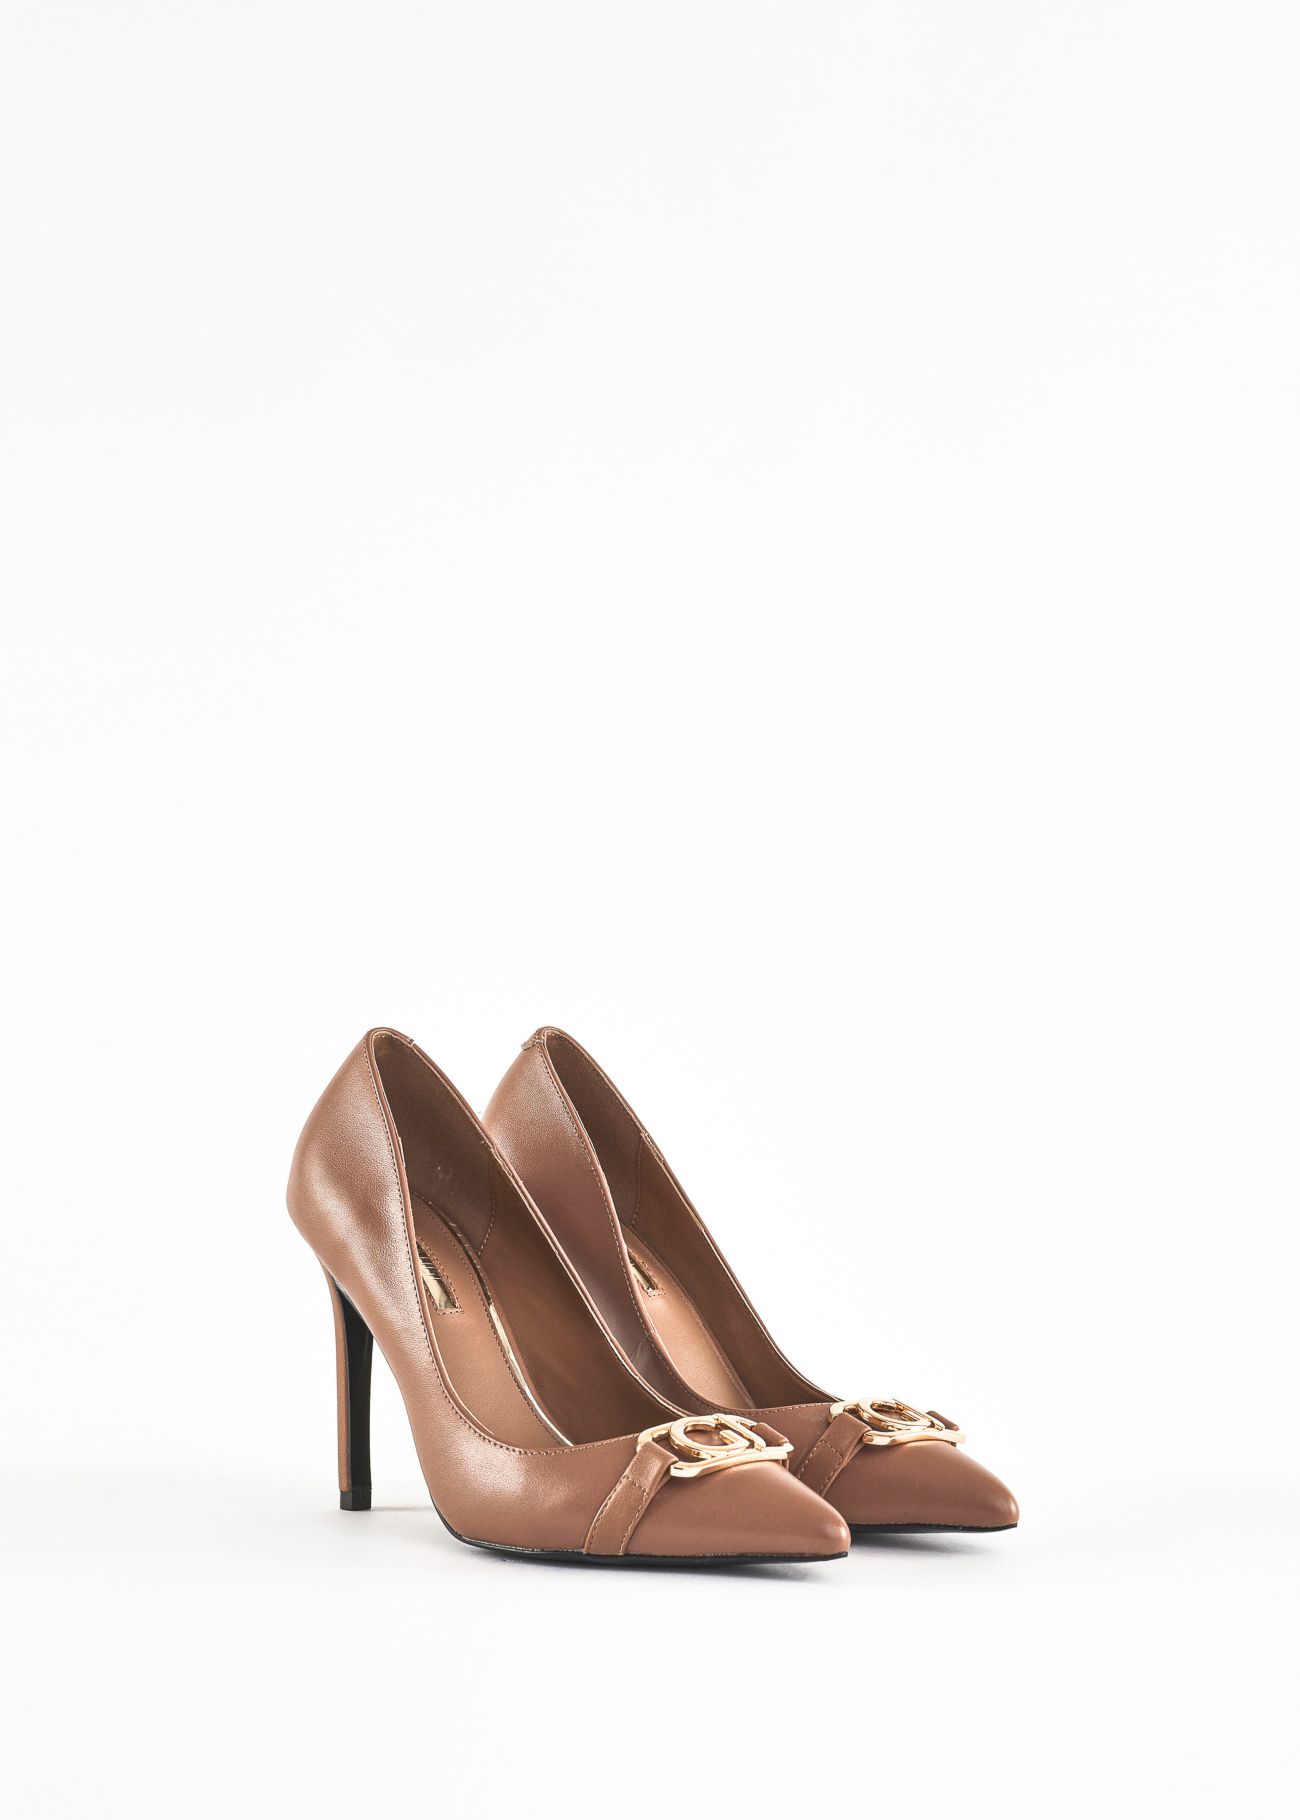 Stiletto heel courts